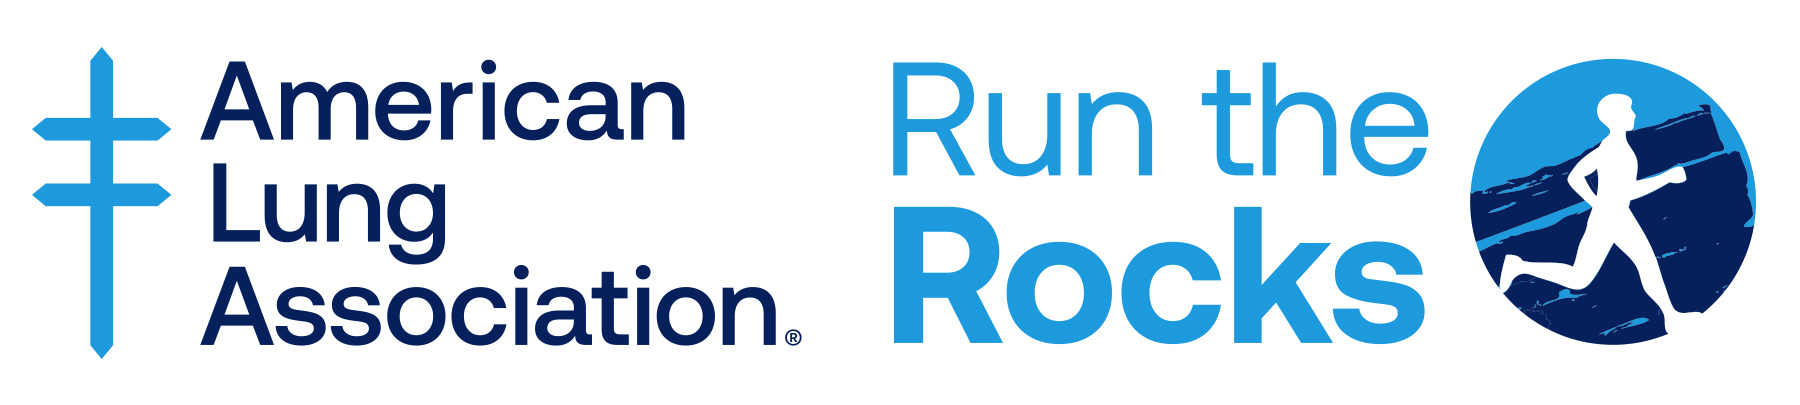 Run the Rocks (CO) logo on RaceRaves